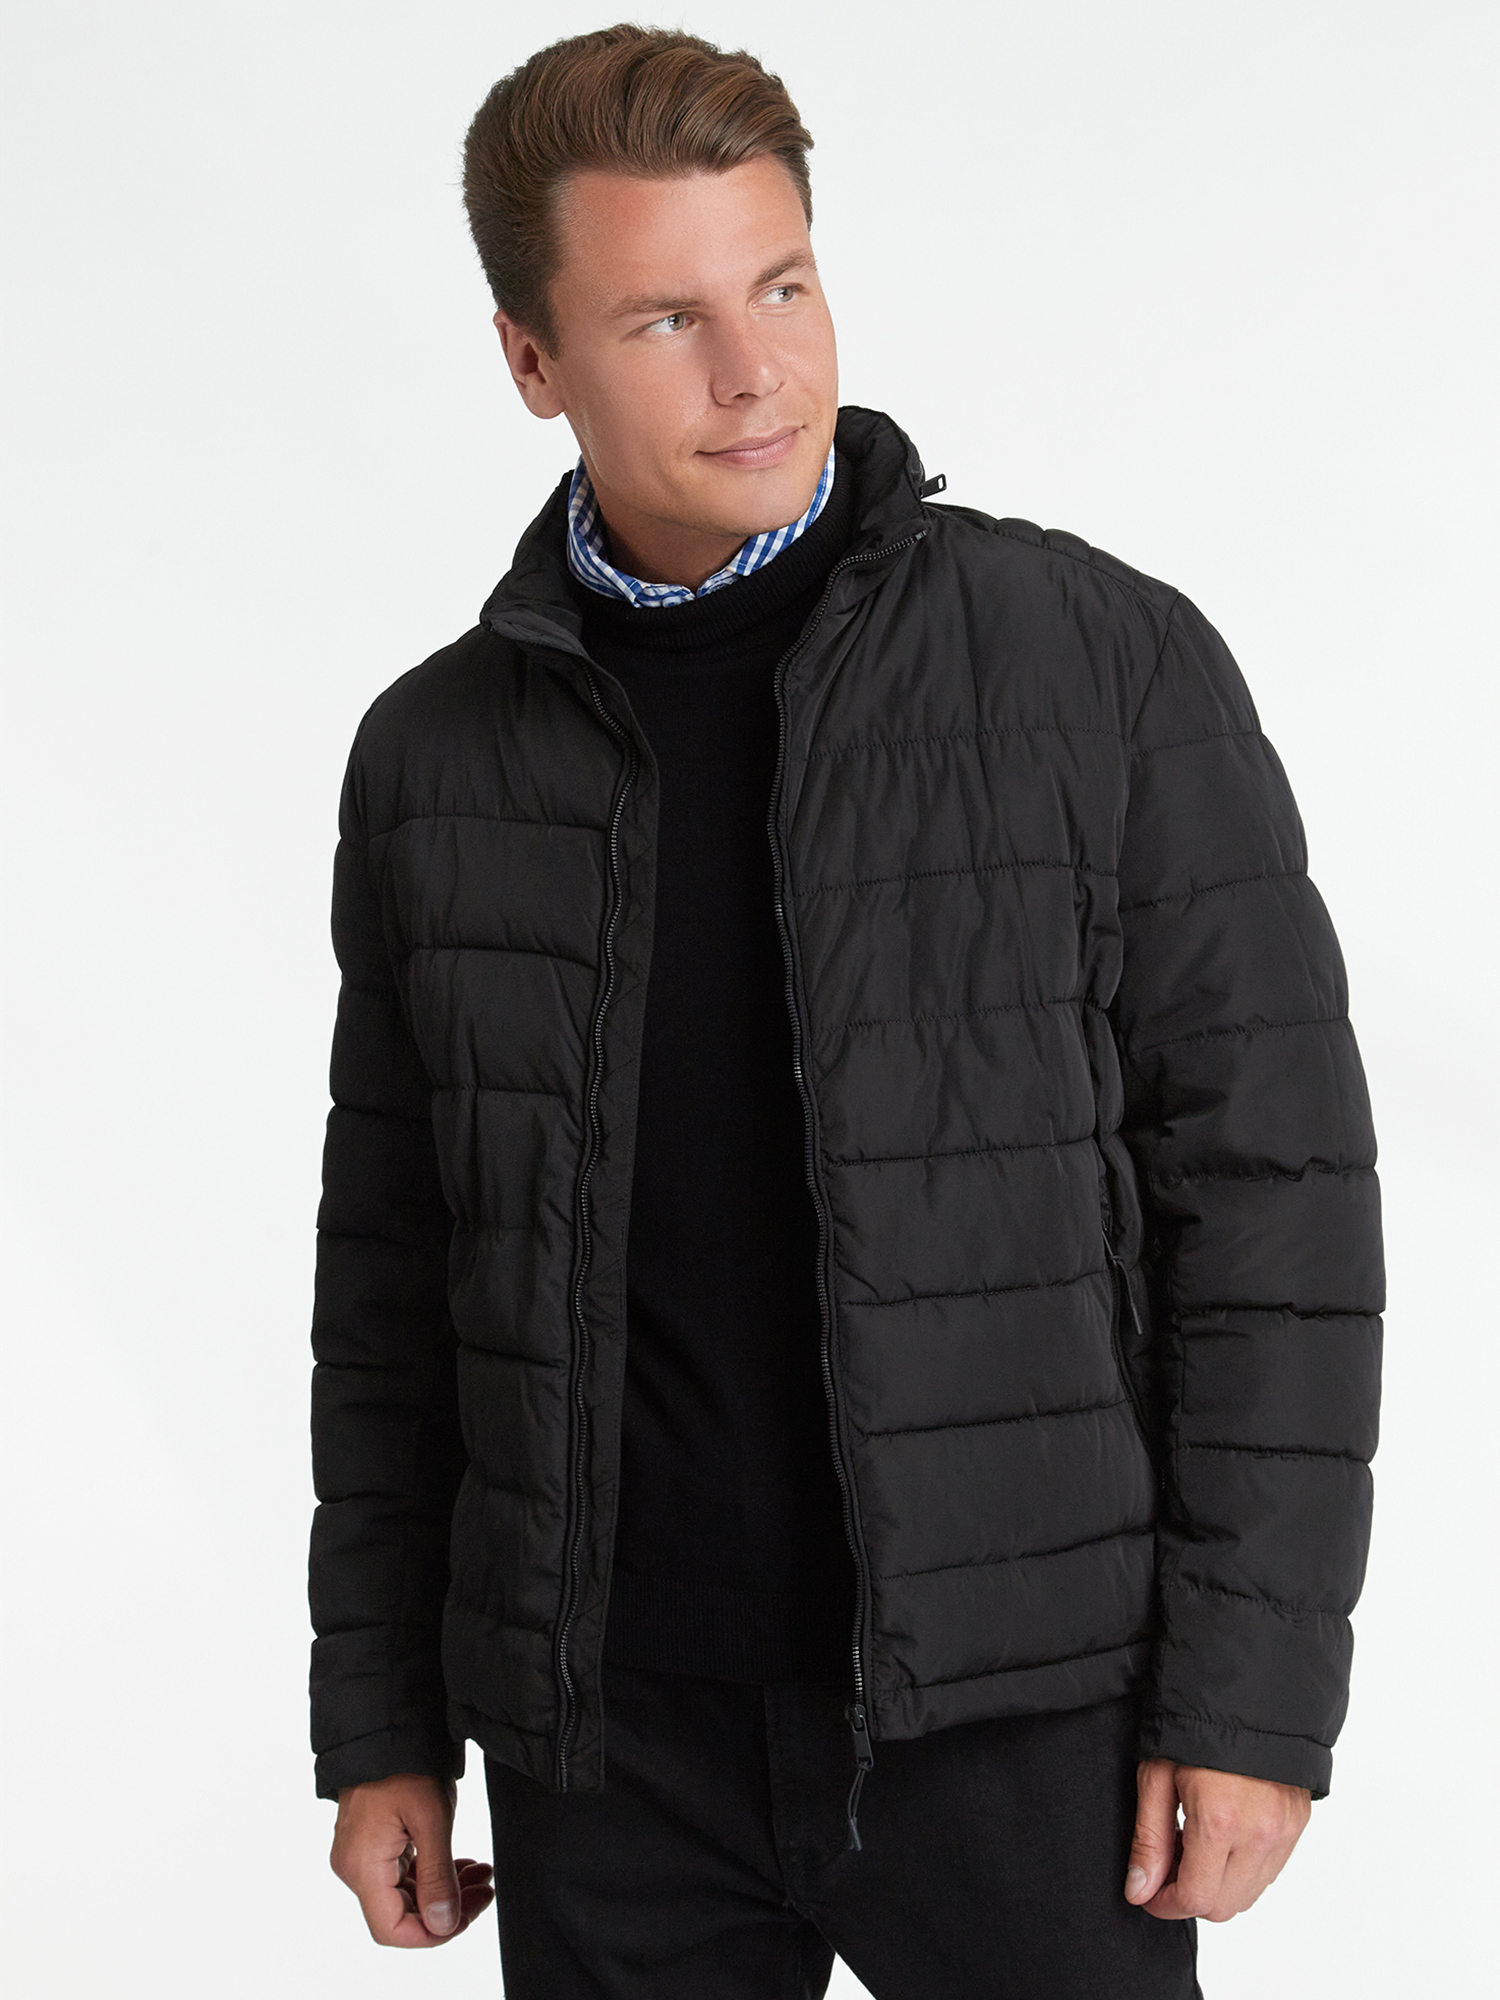 Куртка мужская oodji 1L111053M-1 черная XL - купить в Москве, цены на Мегамаркет | 100042061496